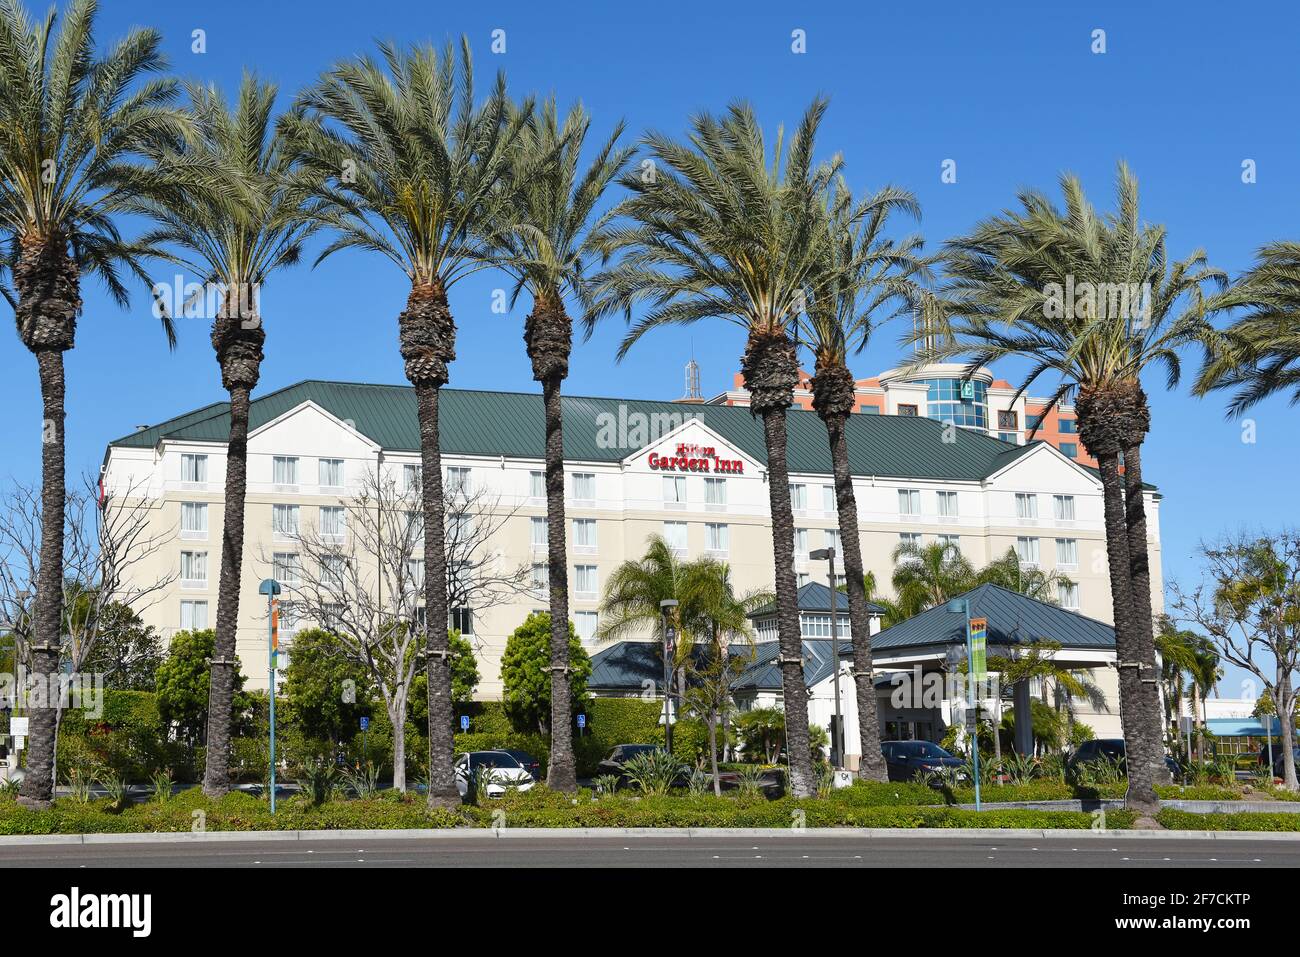 ANAHEIM, KALIFORNIEN - 31. MÄRZ 2021: Hilton Garden Inn am Harbor Boulevard, in der Anaheim Resort Gegend. Stockfoto